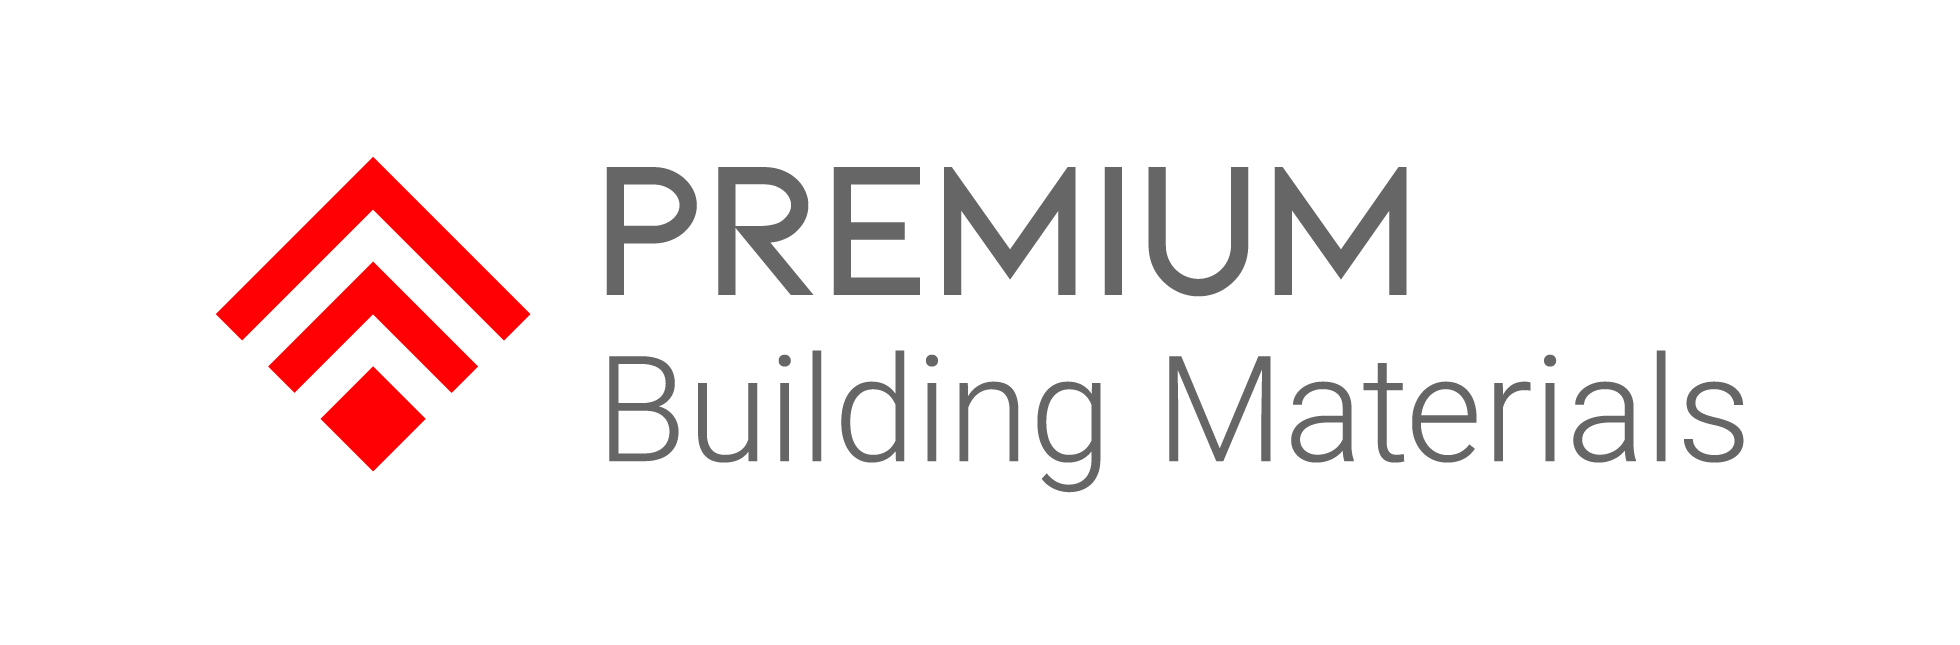 Premium Building Materials